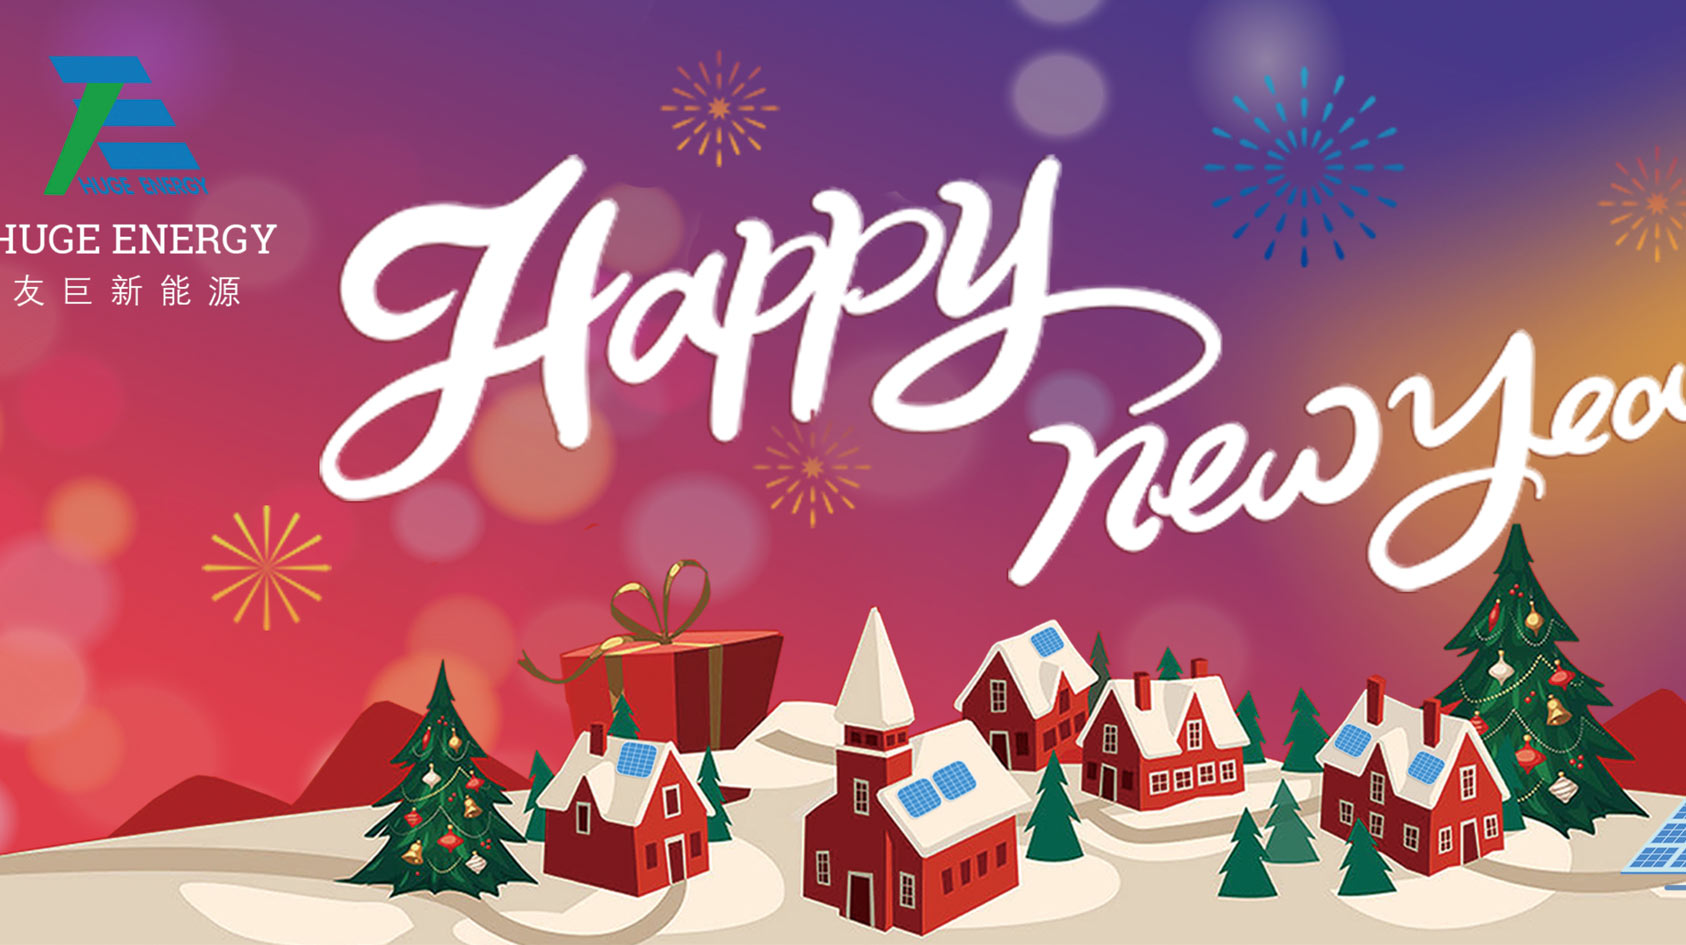 В началото на новата година Huge Energy ви пожелава щастлива нова година!